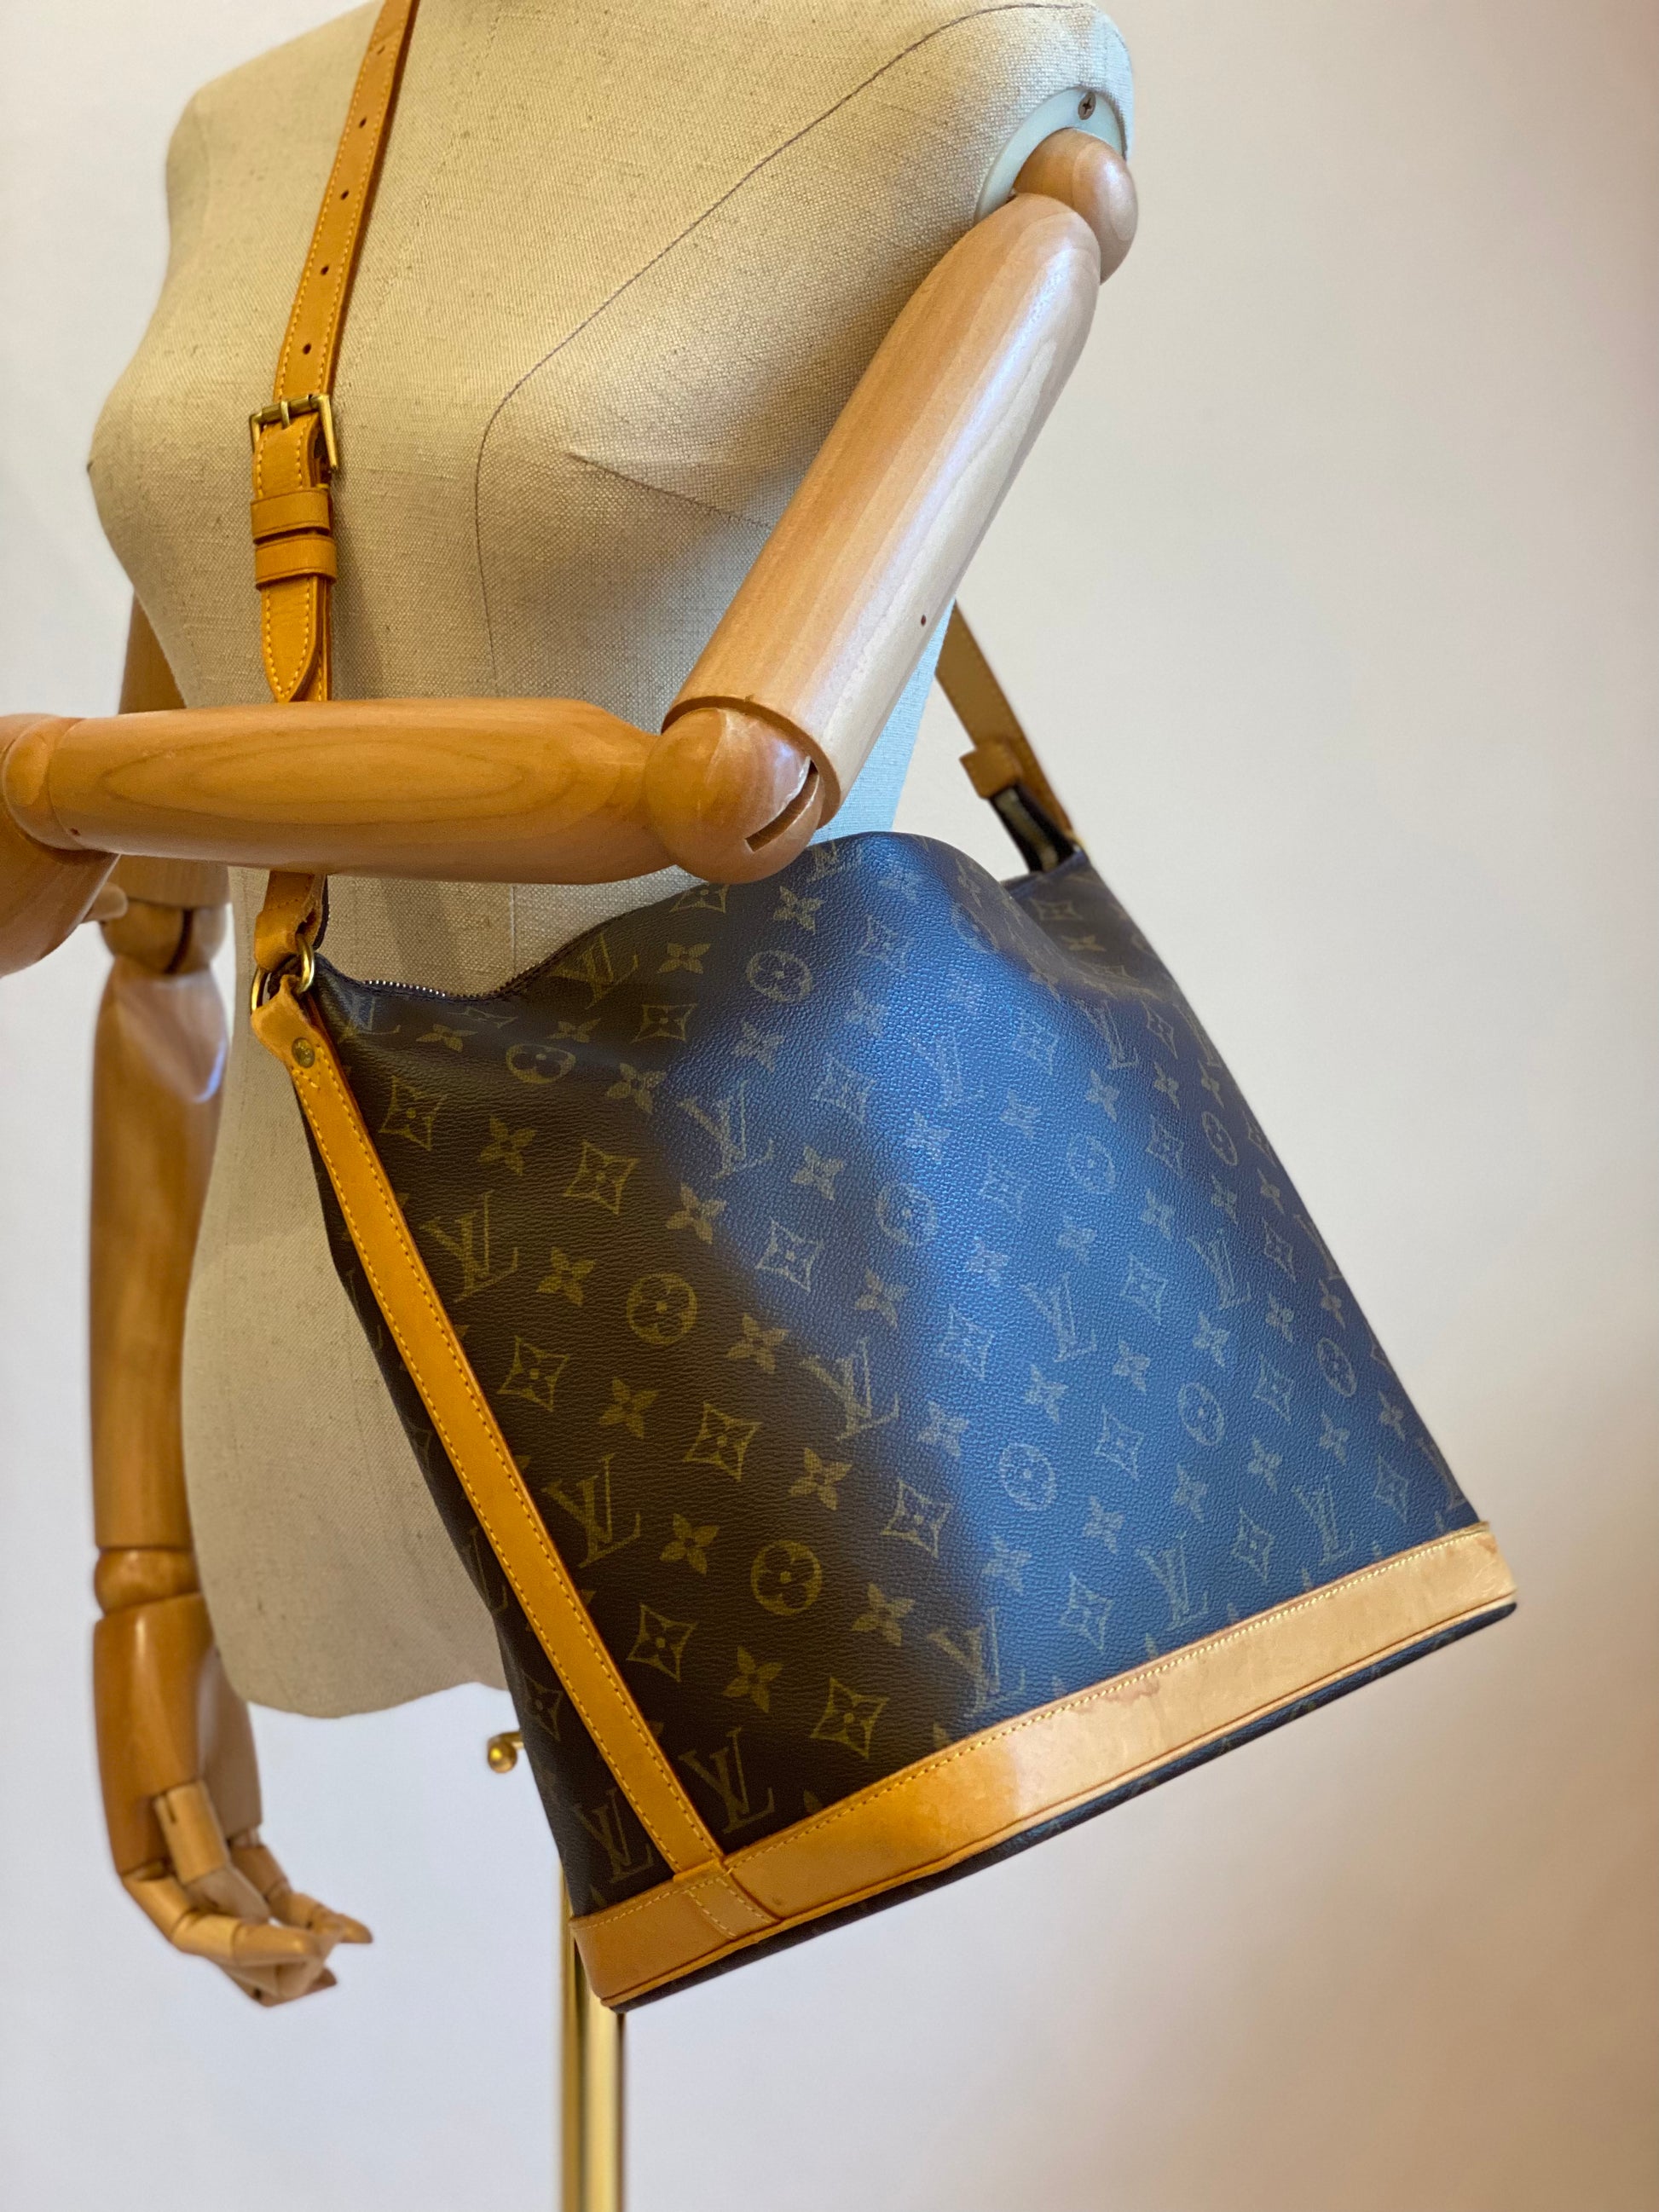 Louis Vuitton Amfar Drei-Accessoire-Tasche mit Umschlag und